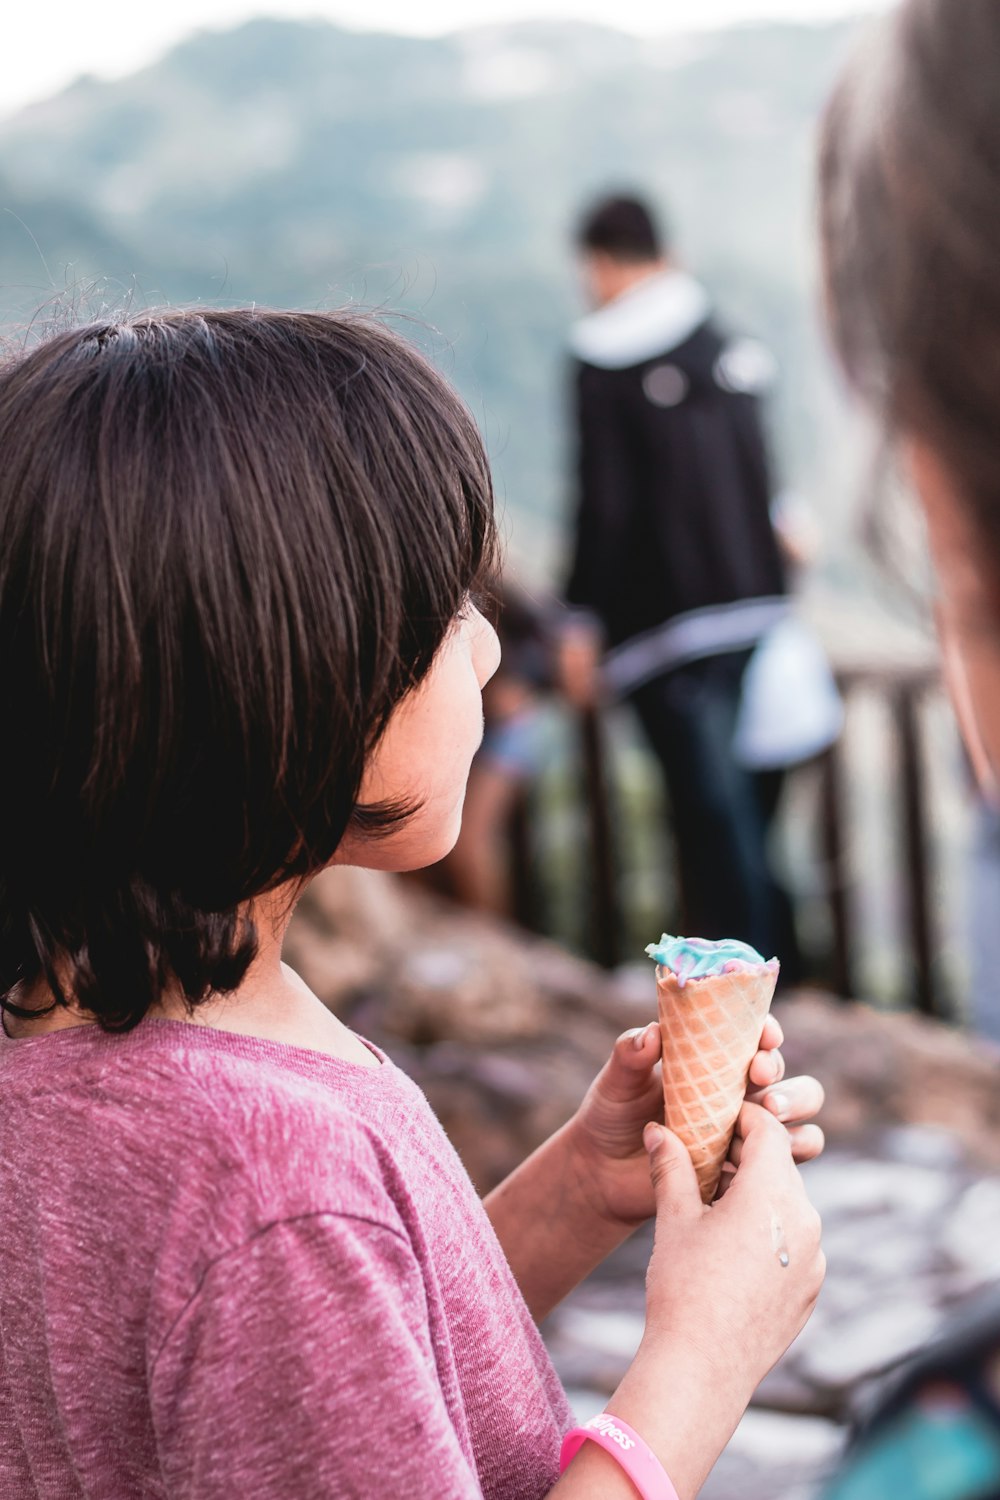 Ein kleines Mädchen, das eine Eistüte isst